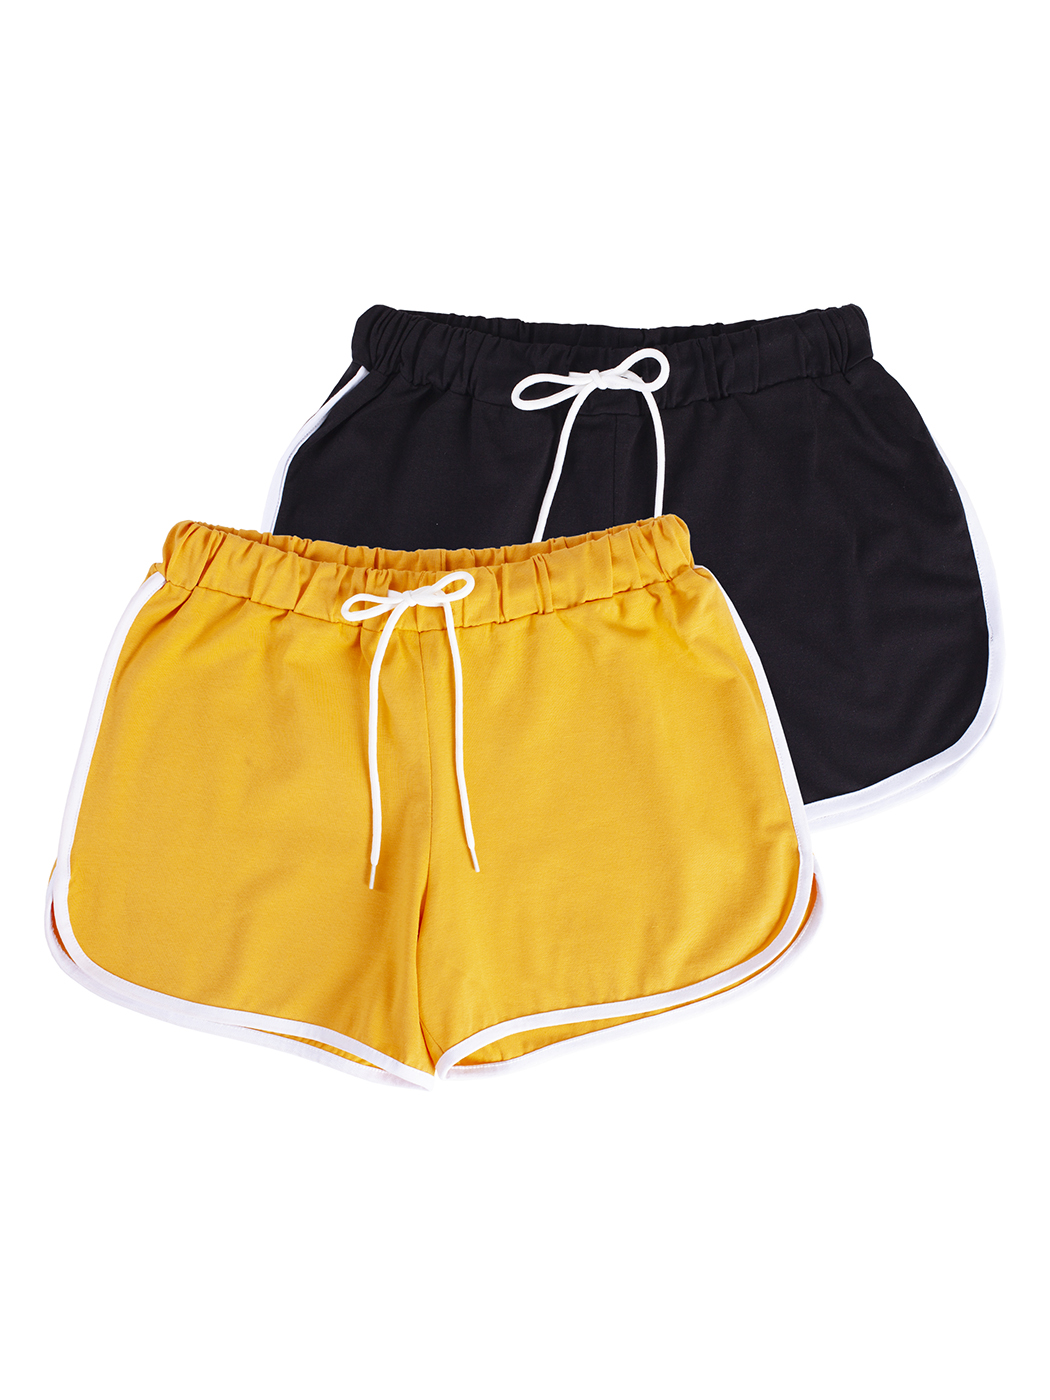 Cпортивные шорты женские Lunarable ksrt002-2_ желтые XL